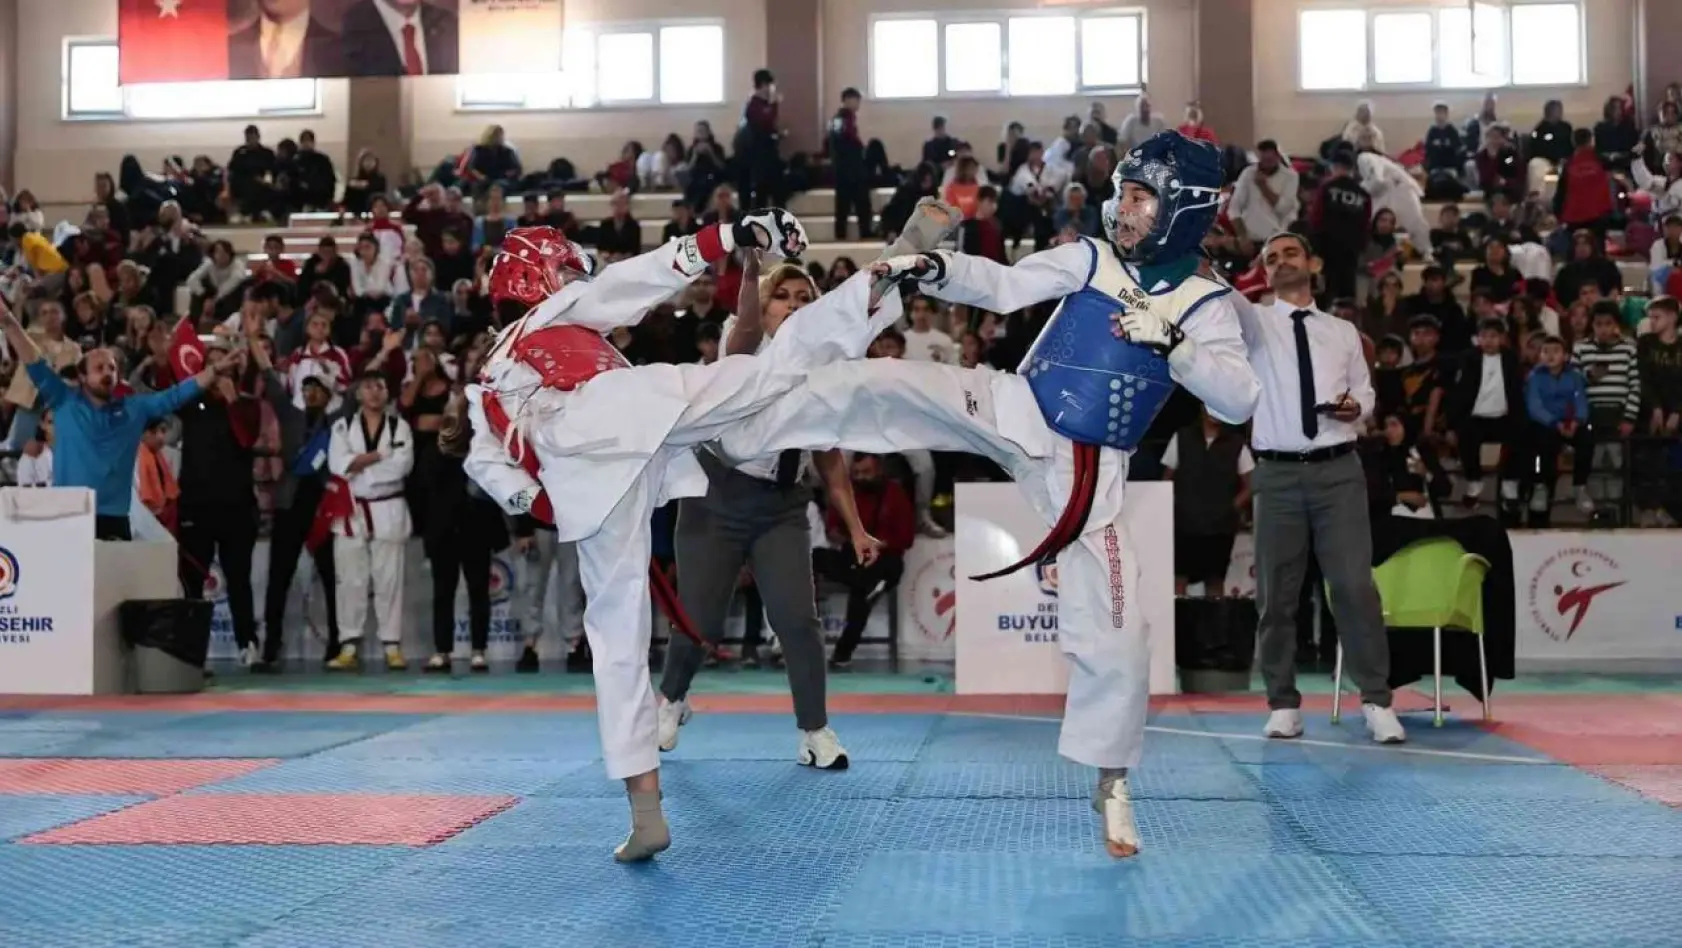 Denizli'ye 15 ilden gelen 400 sporcu turnuvada mücadele etti